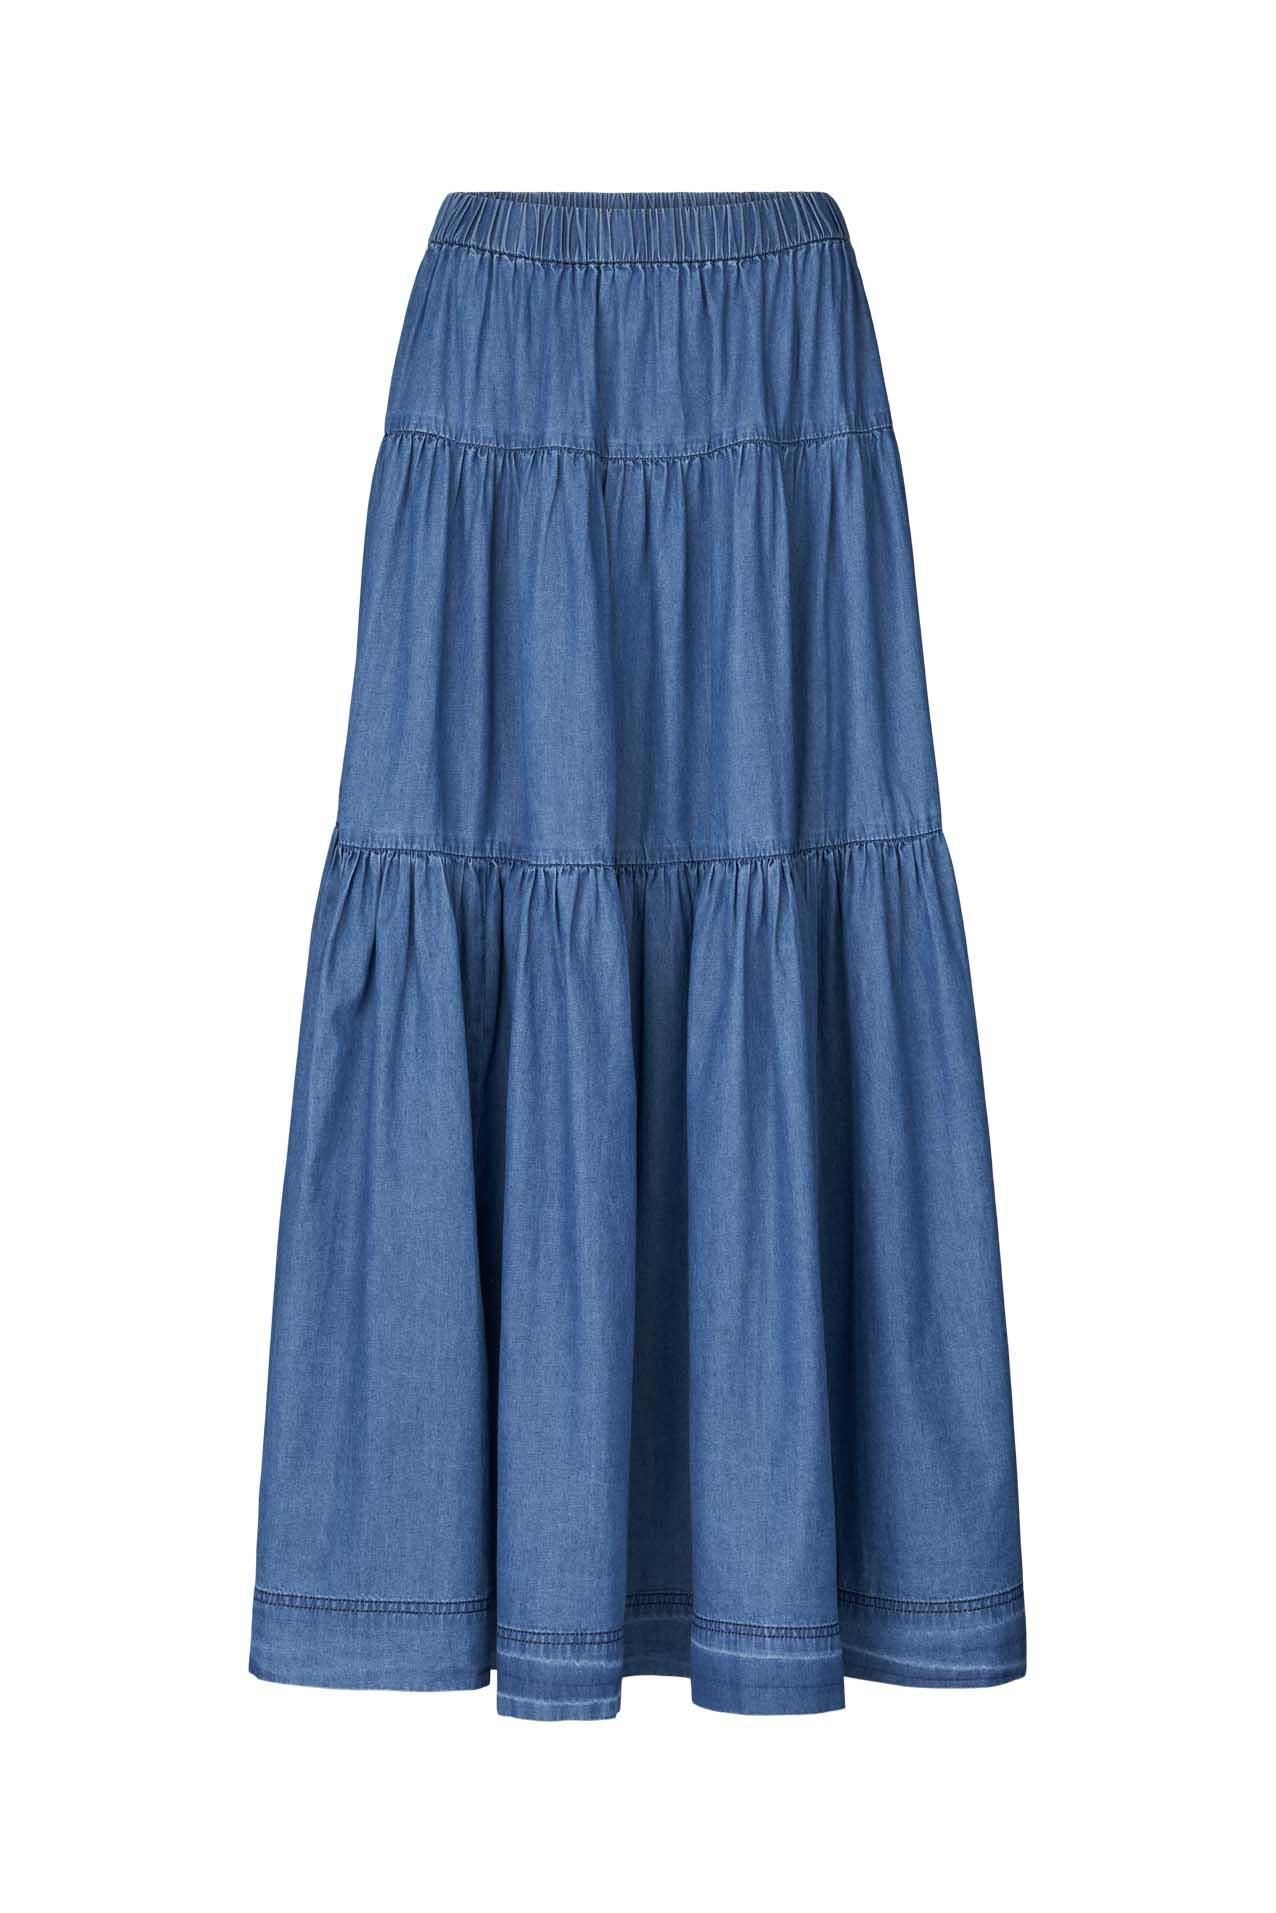 Sunset Skirt Blue Lollys Laundry